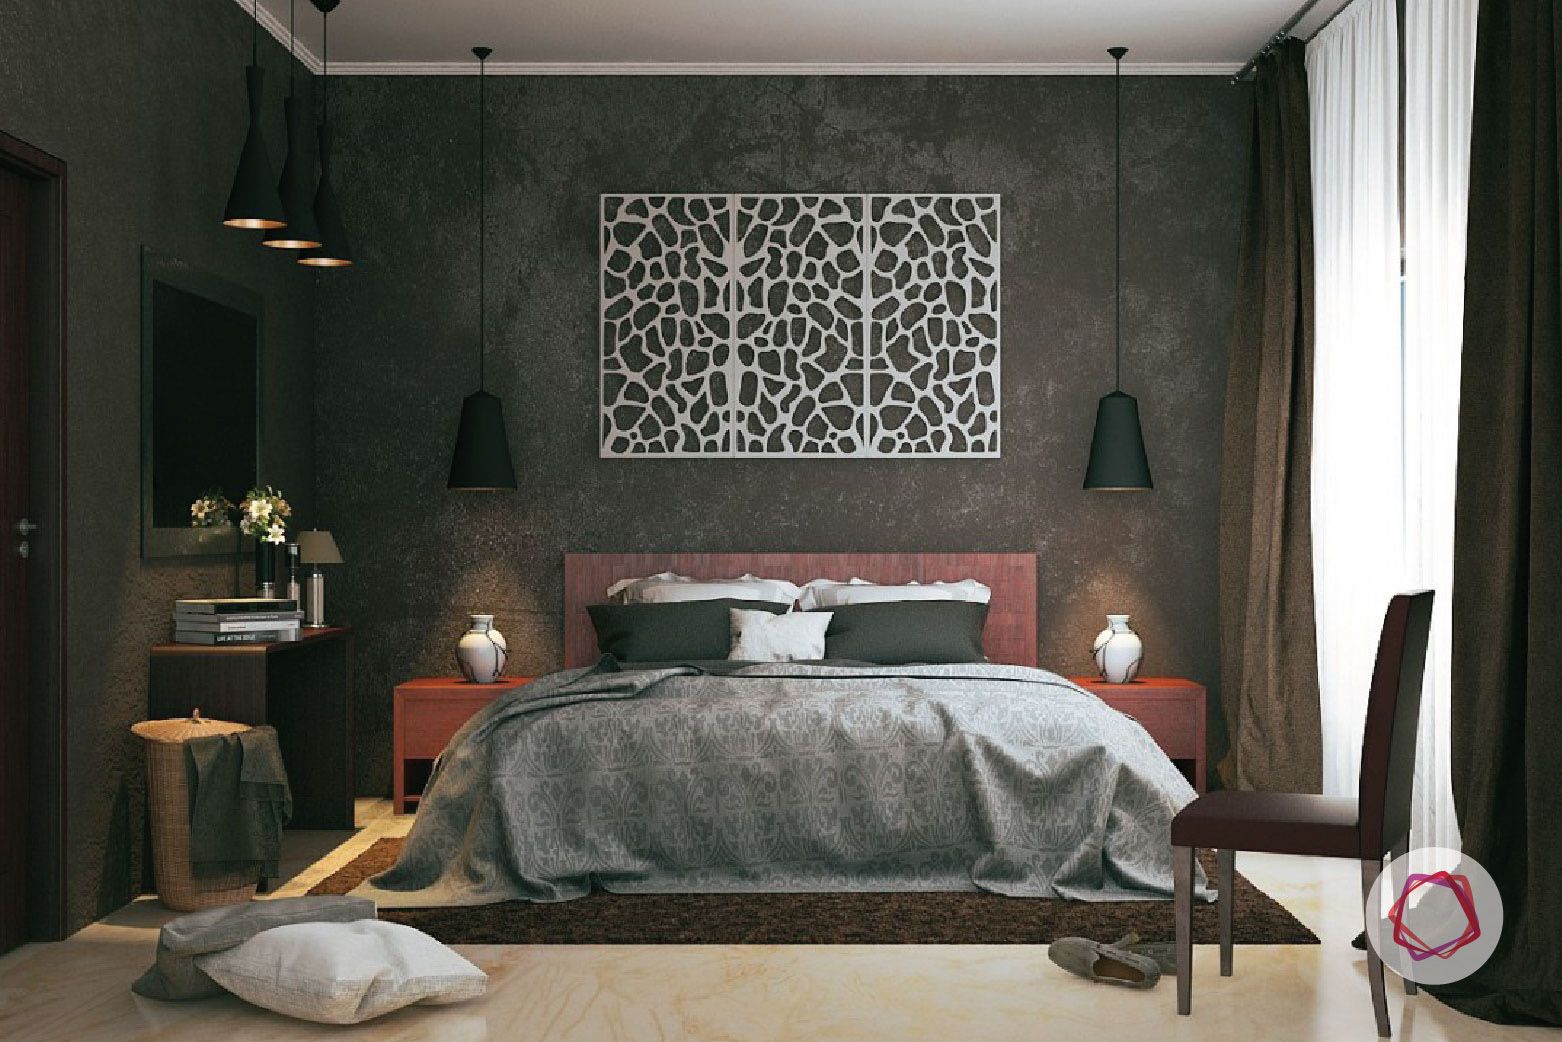 Sexy bedroom ideas_Bedspreads